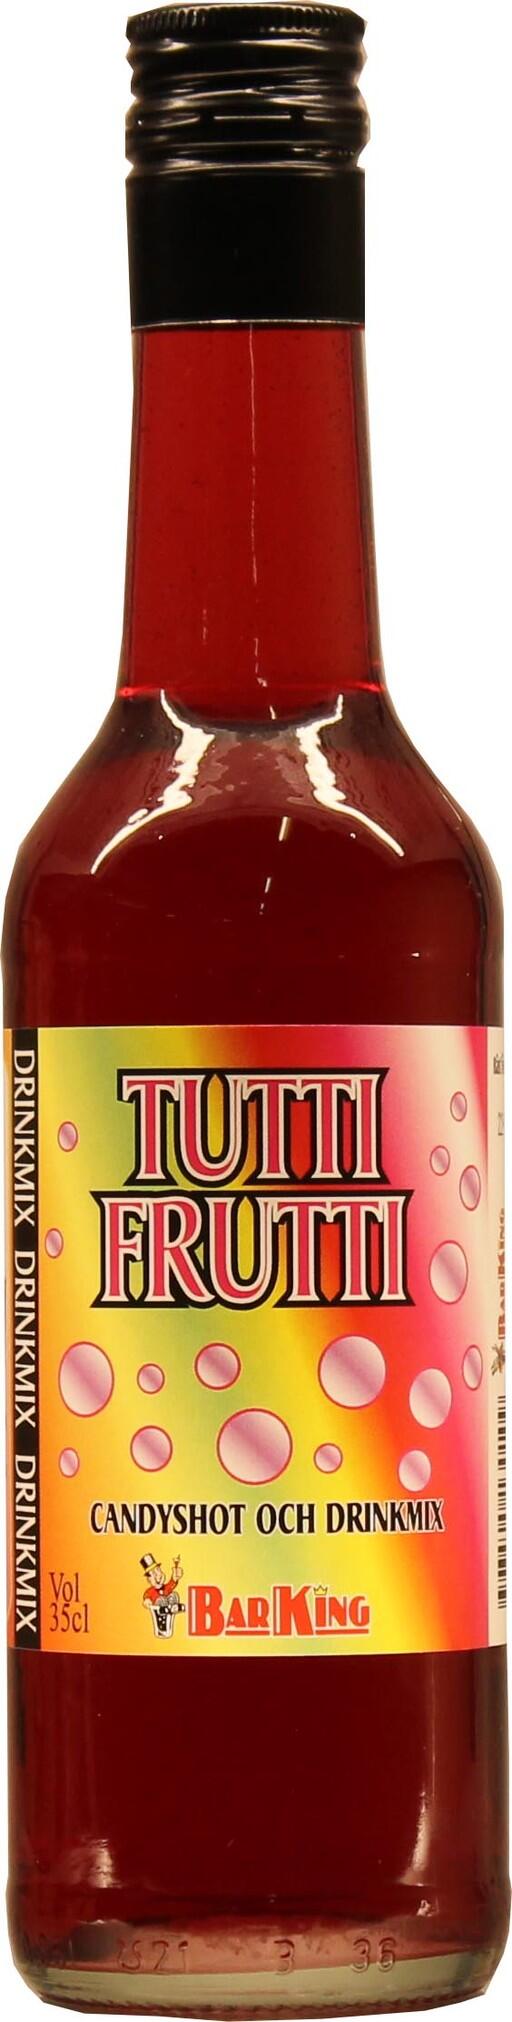 Tutti frutti drinkmix från Barking.